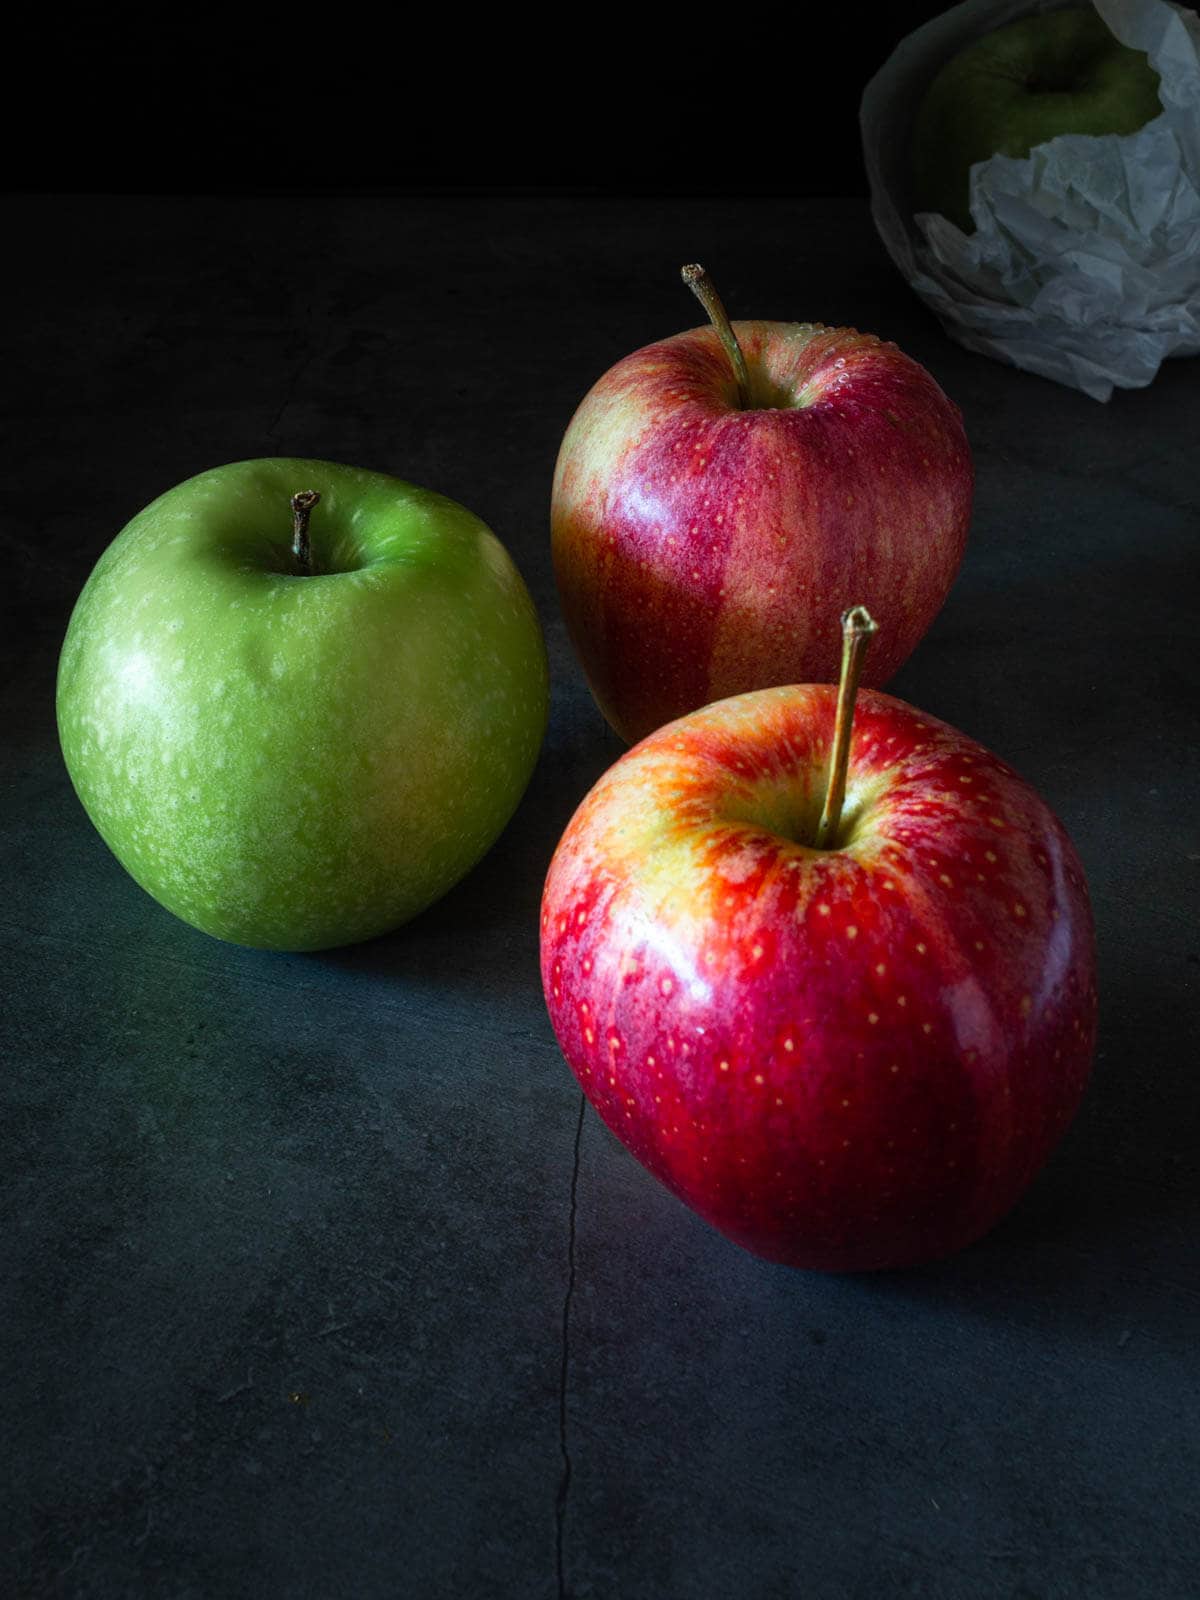 una manzana verde junto a dos manzanas rojas gala.